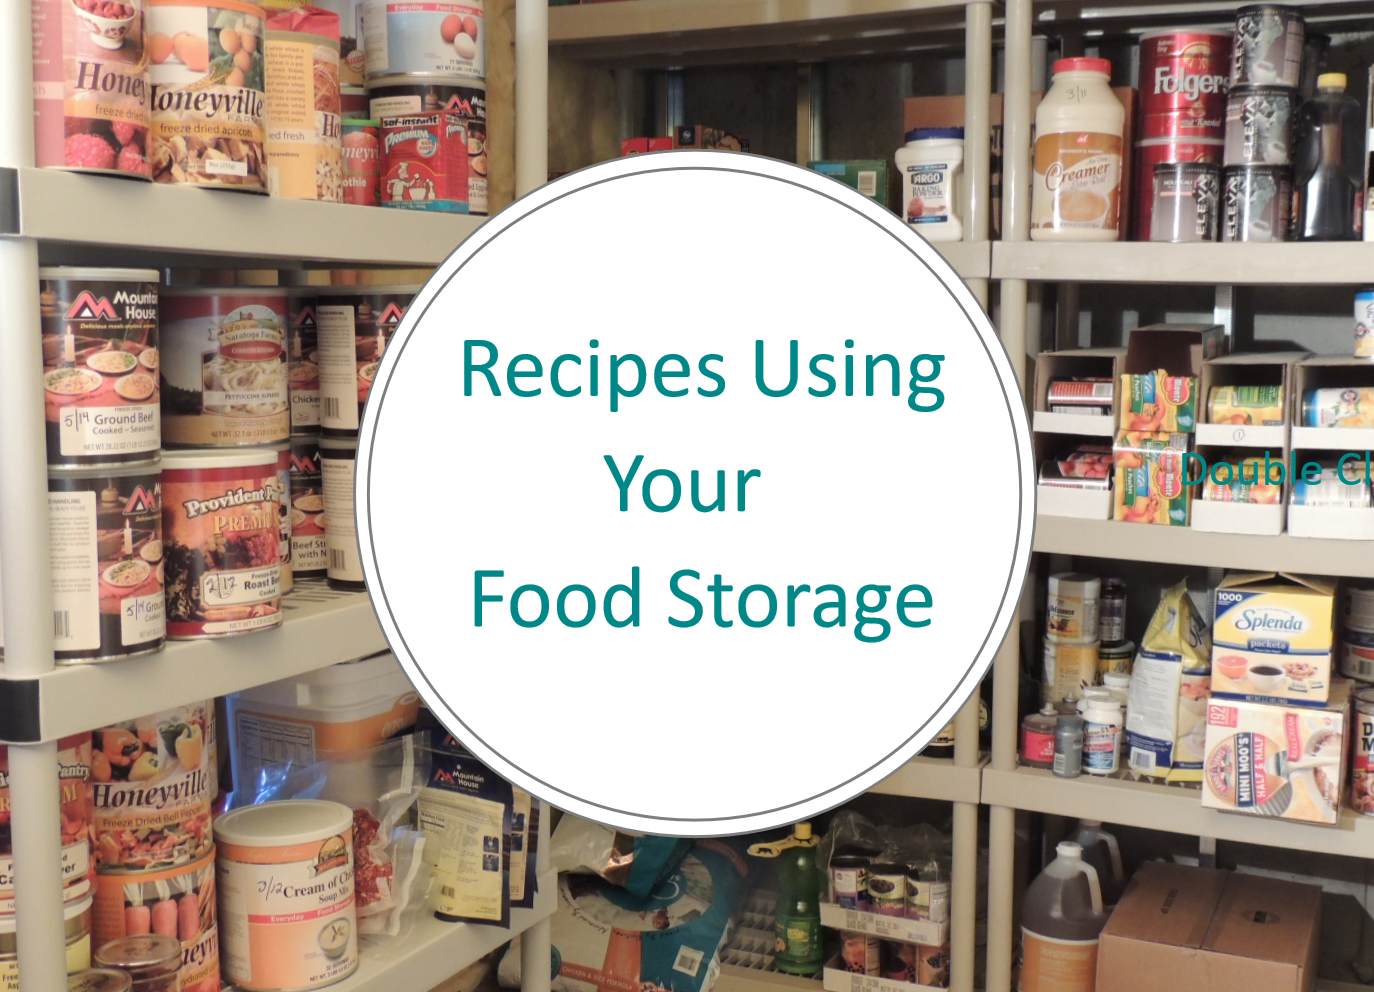 https://www.familysurvivalplanning.com/images/food-storage-shelves.jpg